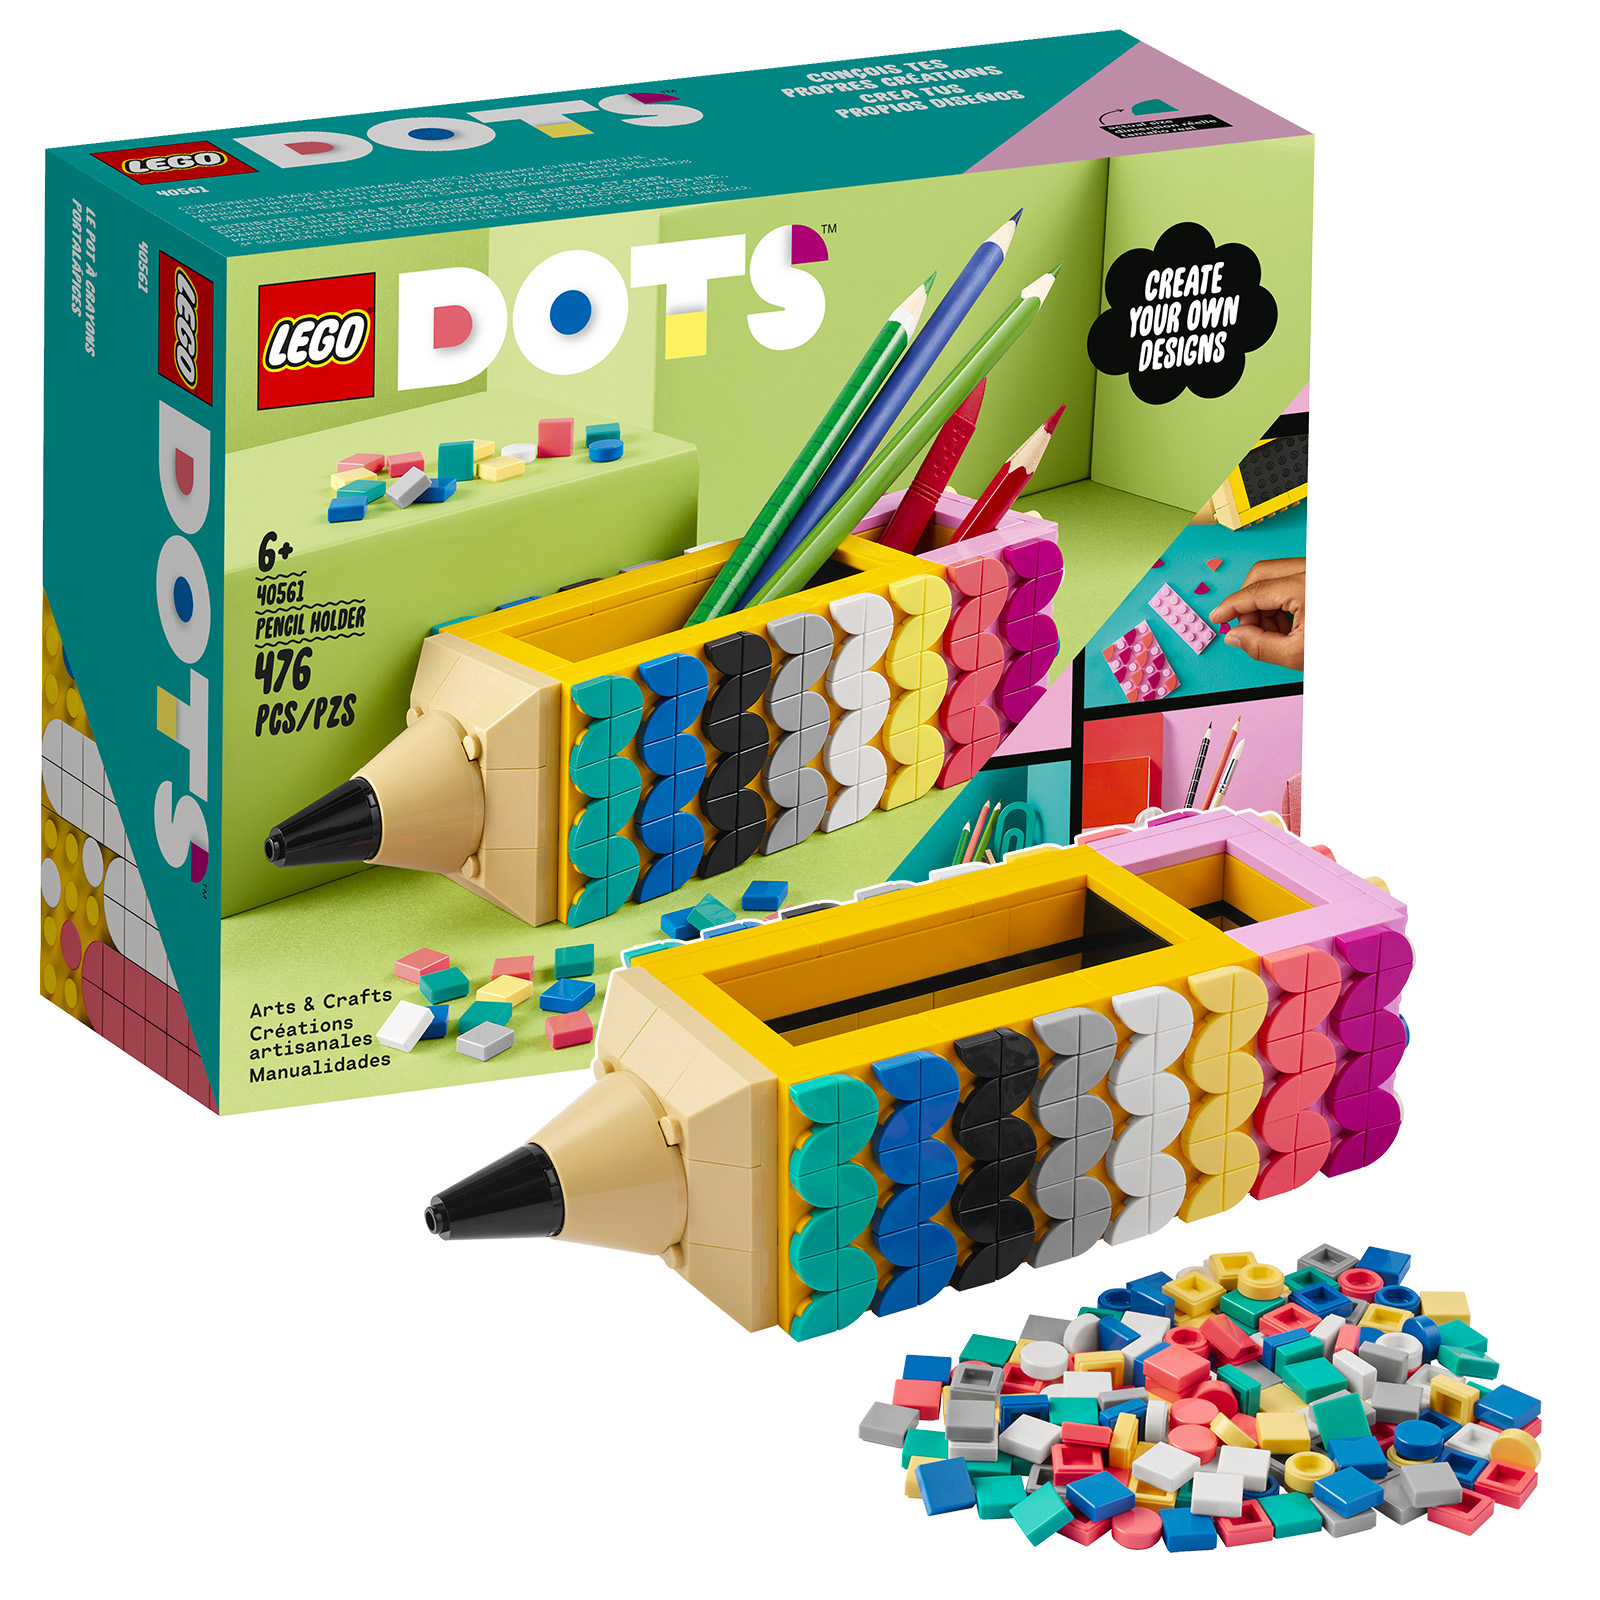 Sur le Shop LEGO : set DOTS 40561 Pencil Holder et polybag Super Mario 30509 Yellow Yoshi Fruit Tree offerts